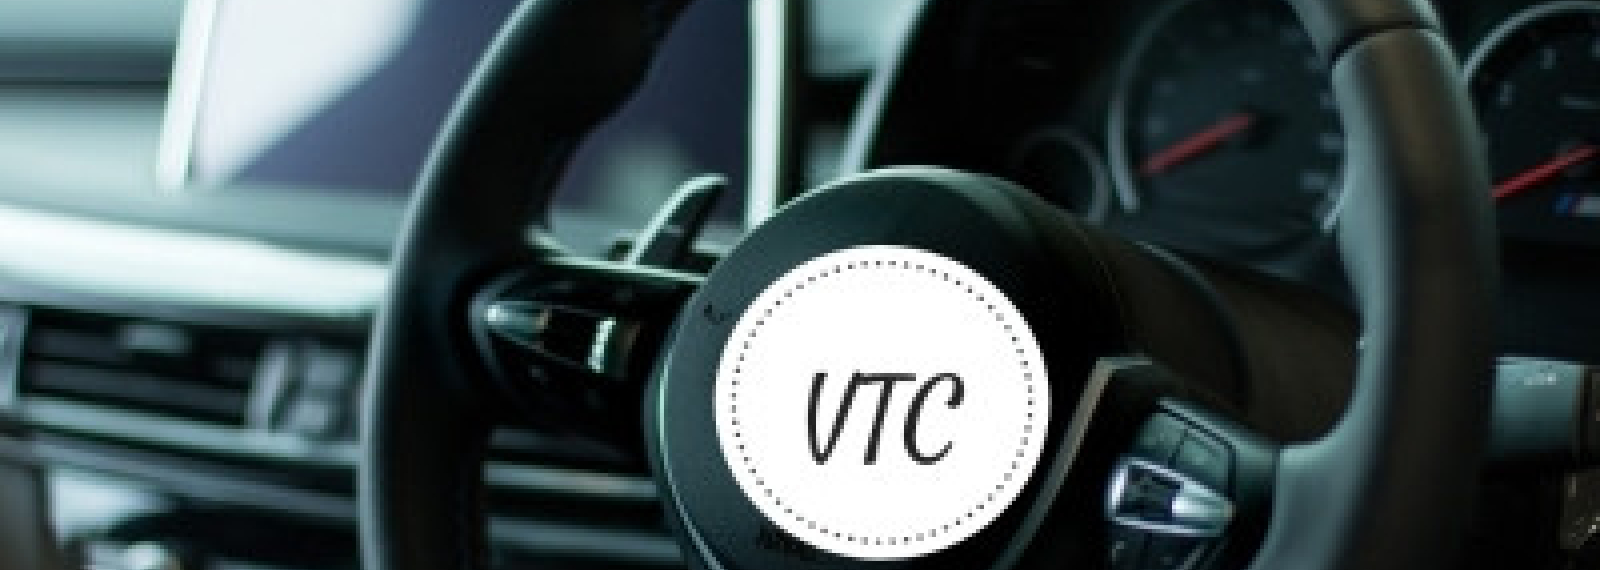 Cab Cap VTC